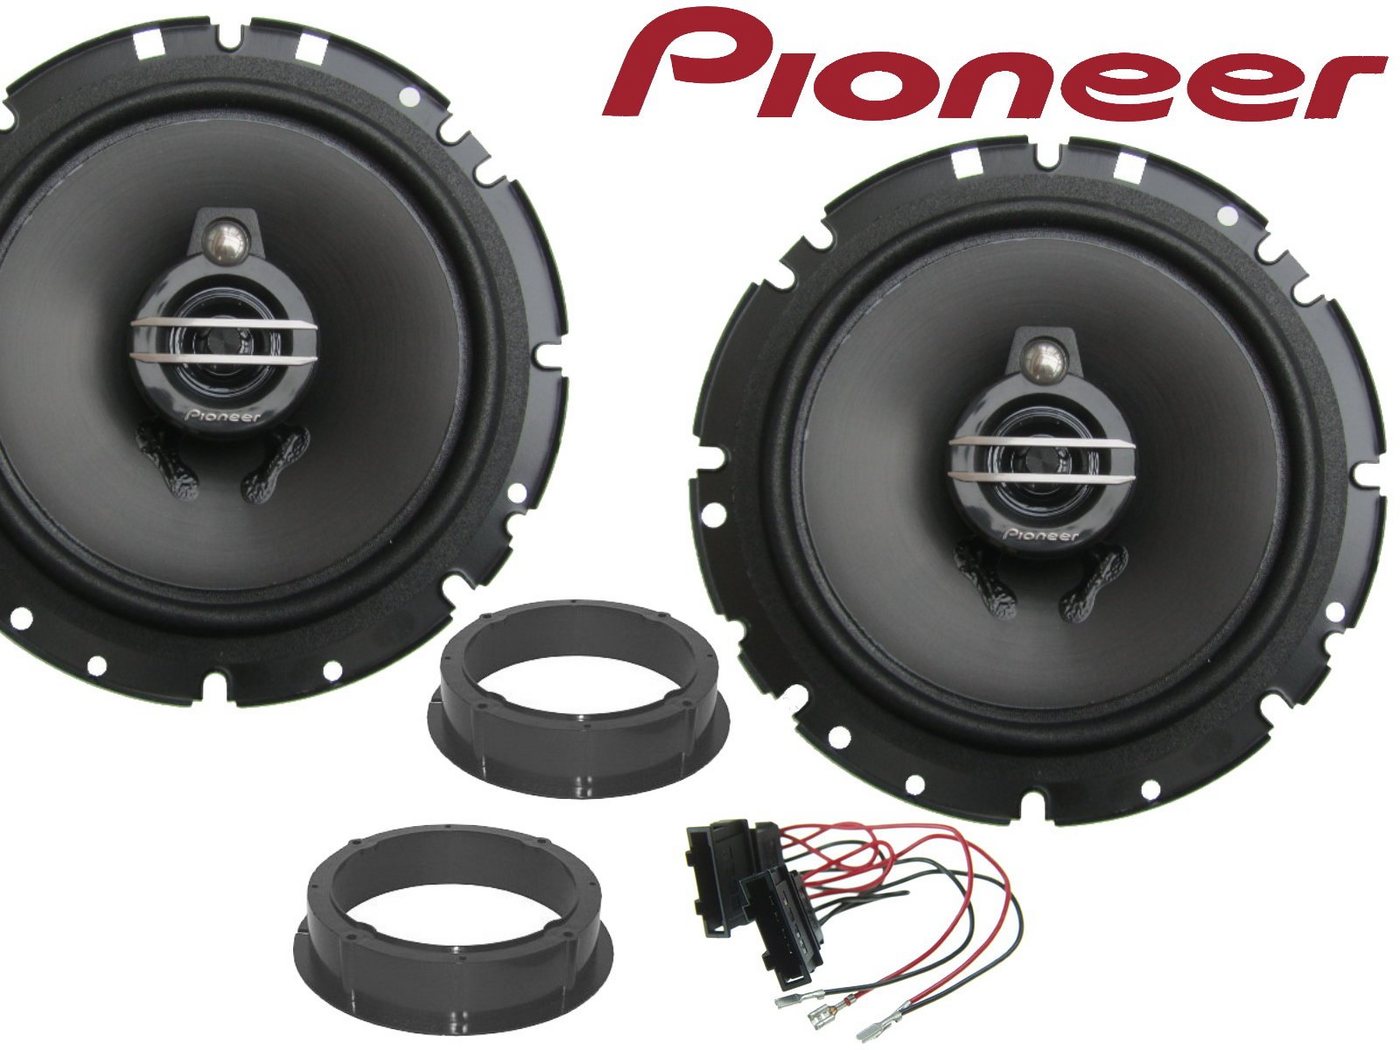 DSX Pioneer 3Wege passend für VW Fox Bj 03-09 Lautspr Auto-Lautsprecher (40 W) von DSX